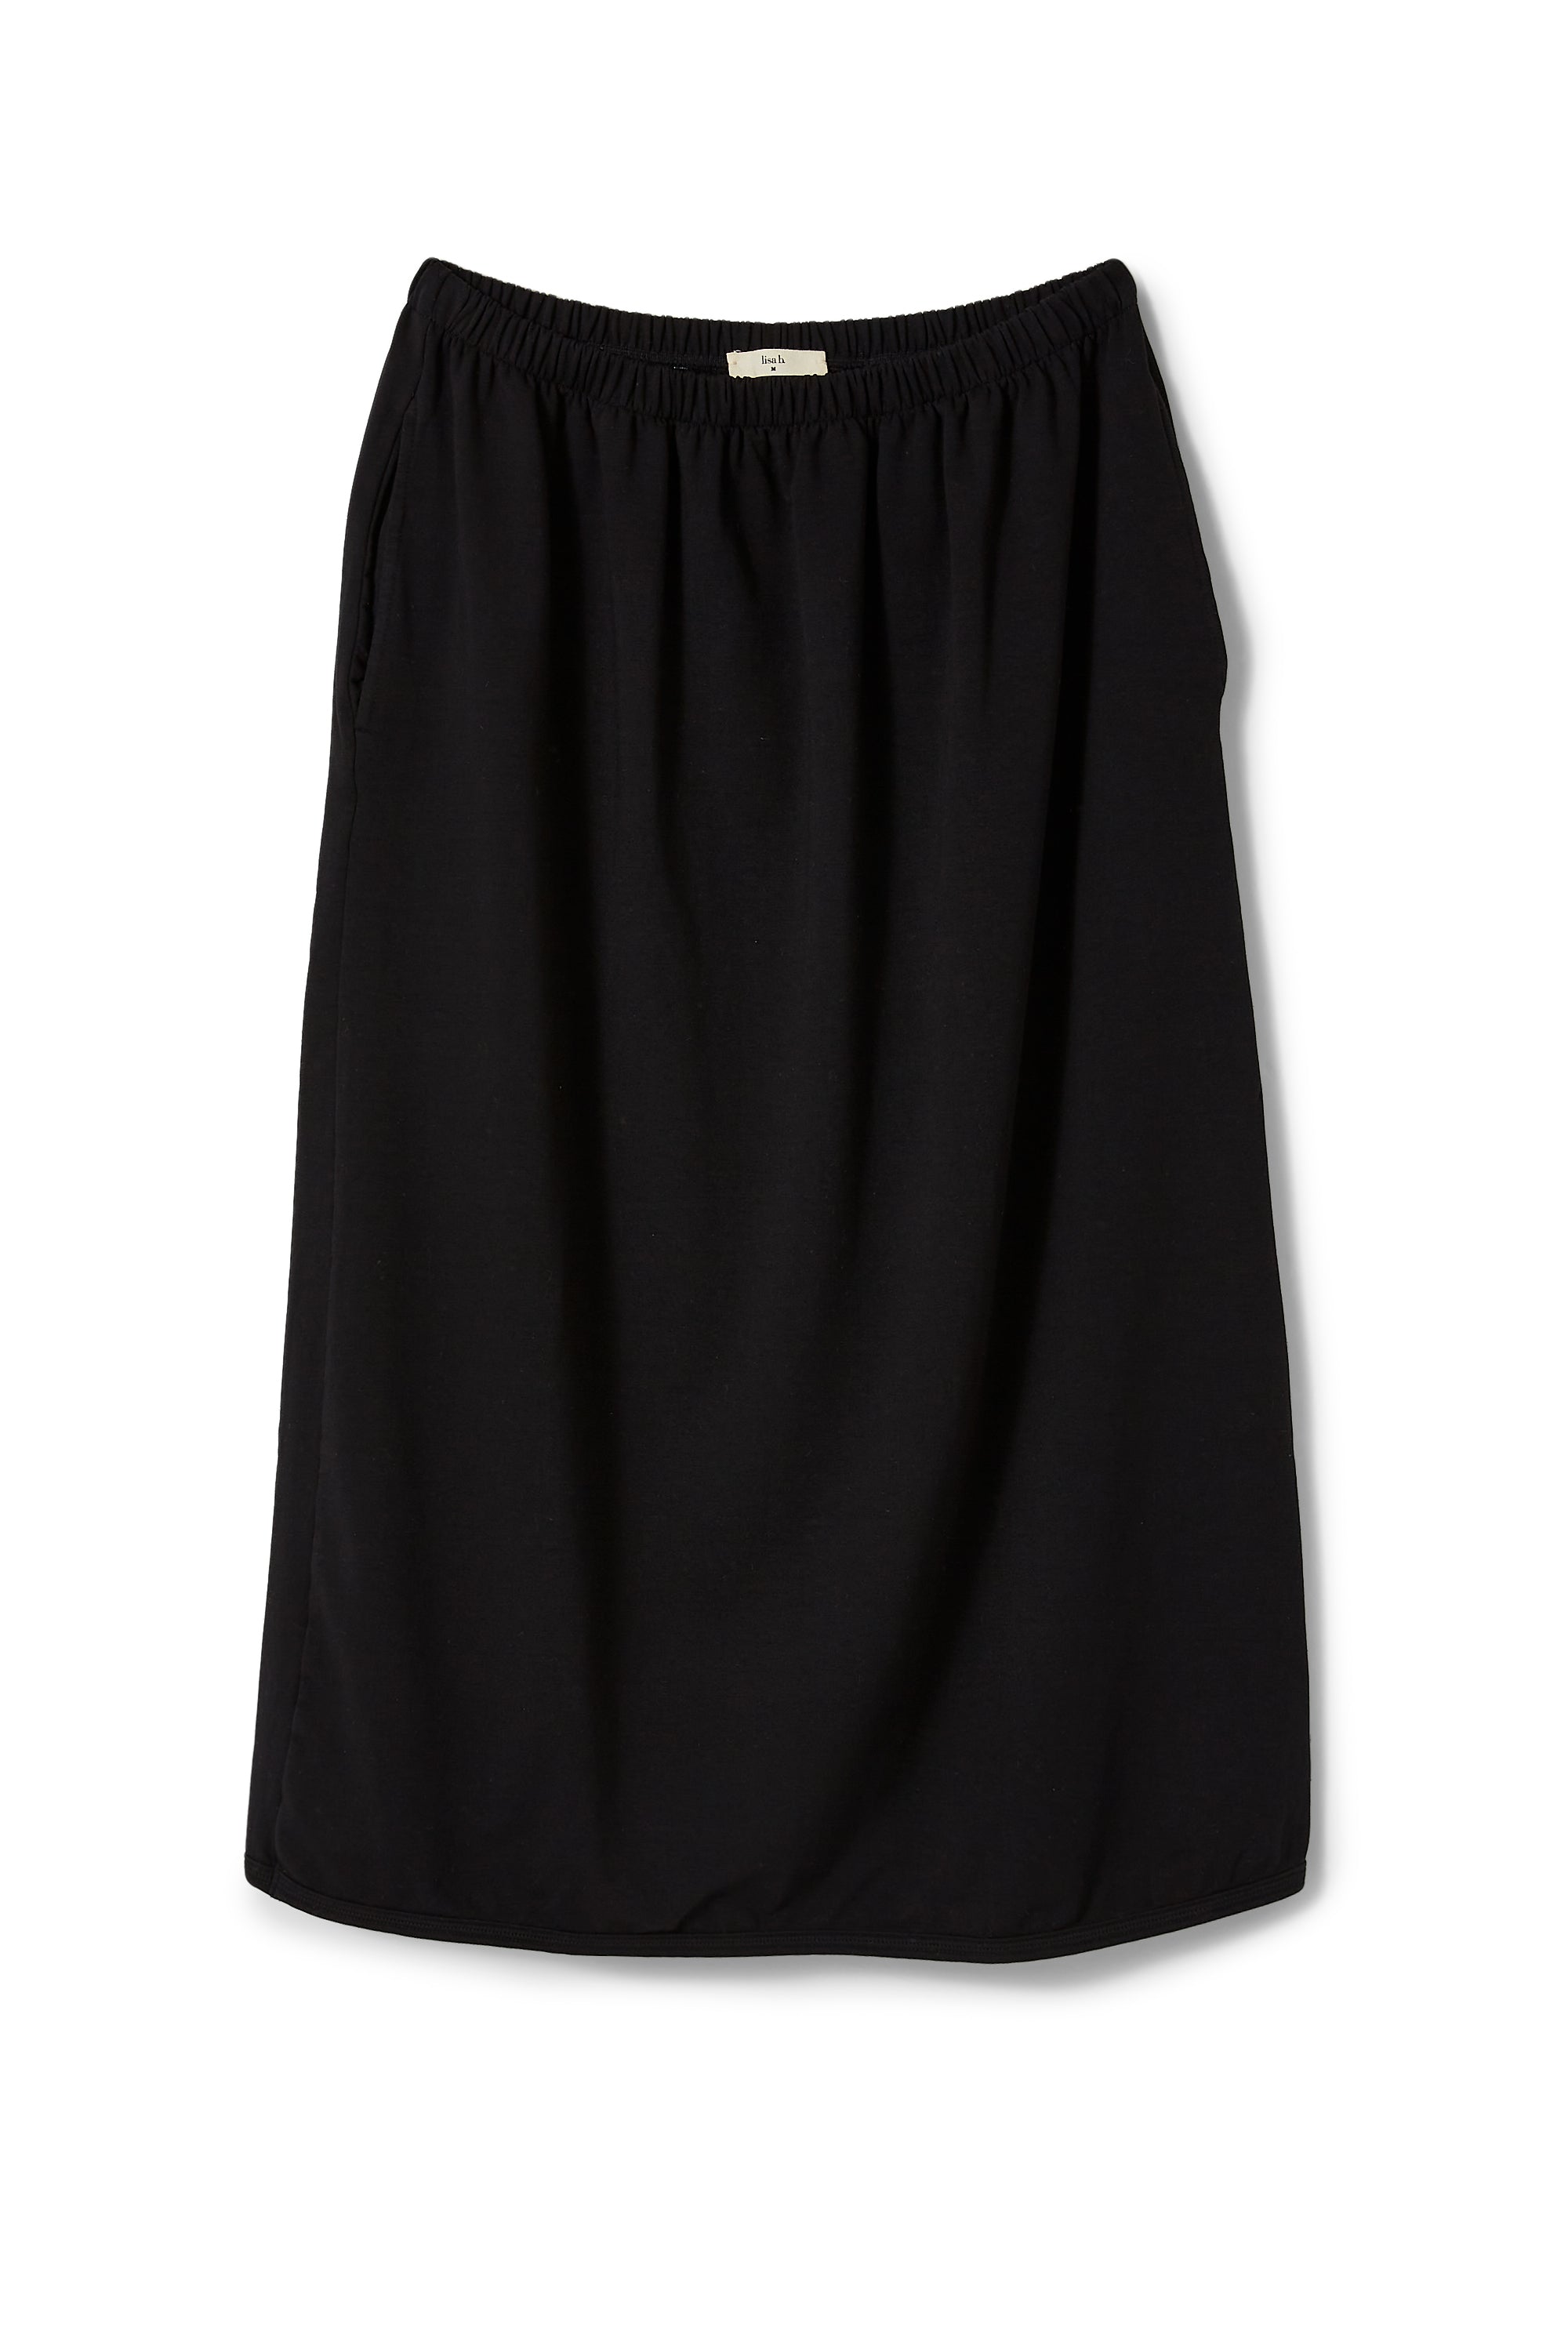 lisa b. cotton skirt in black